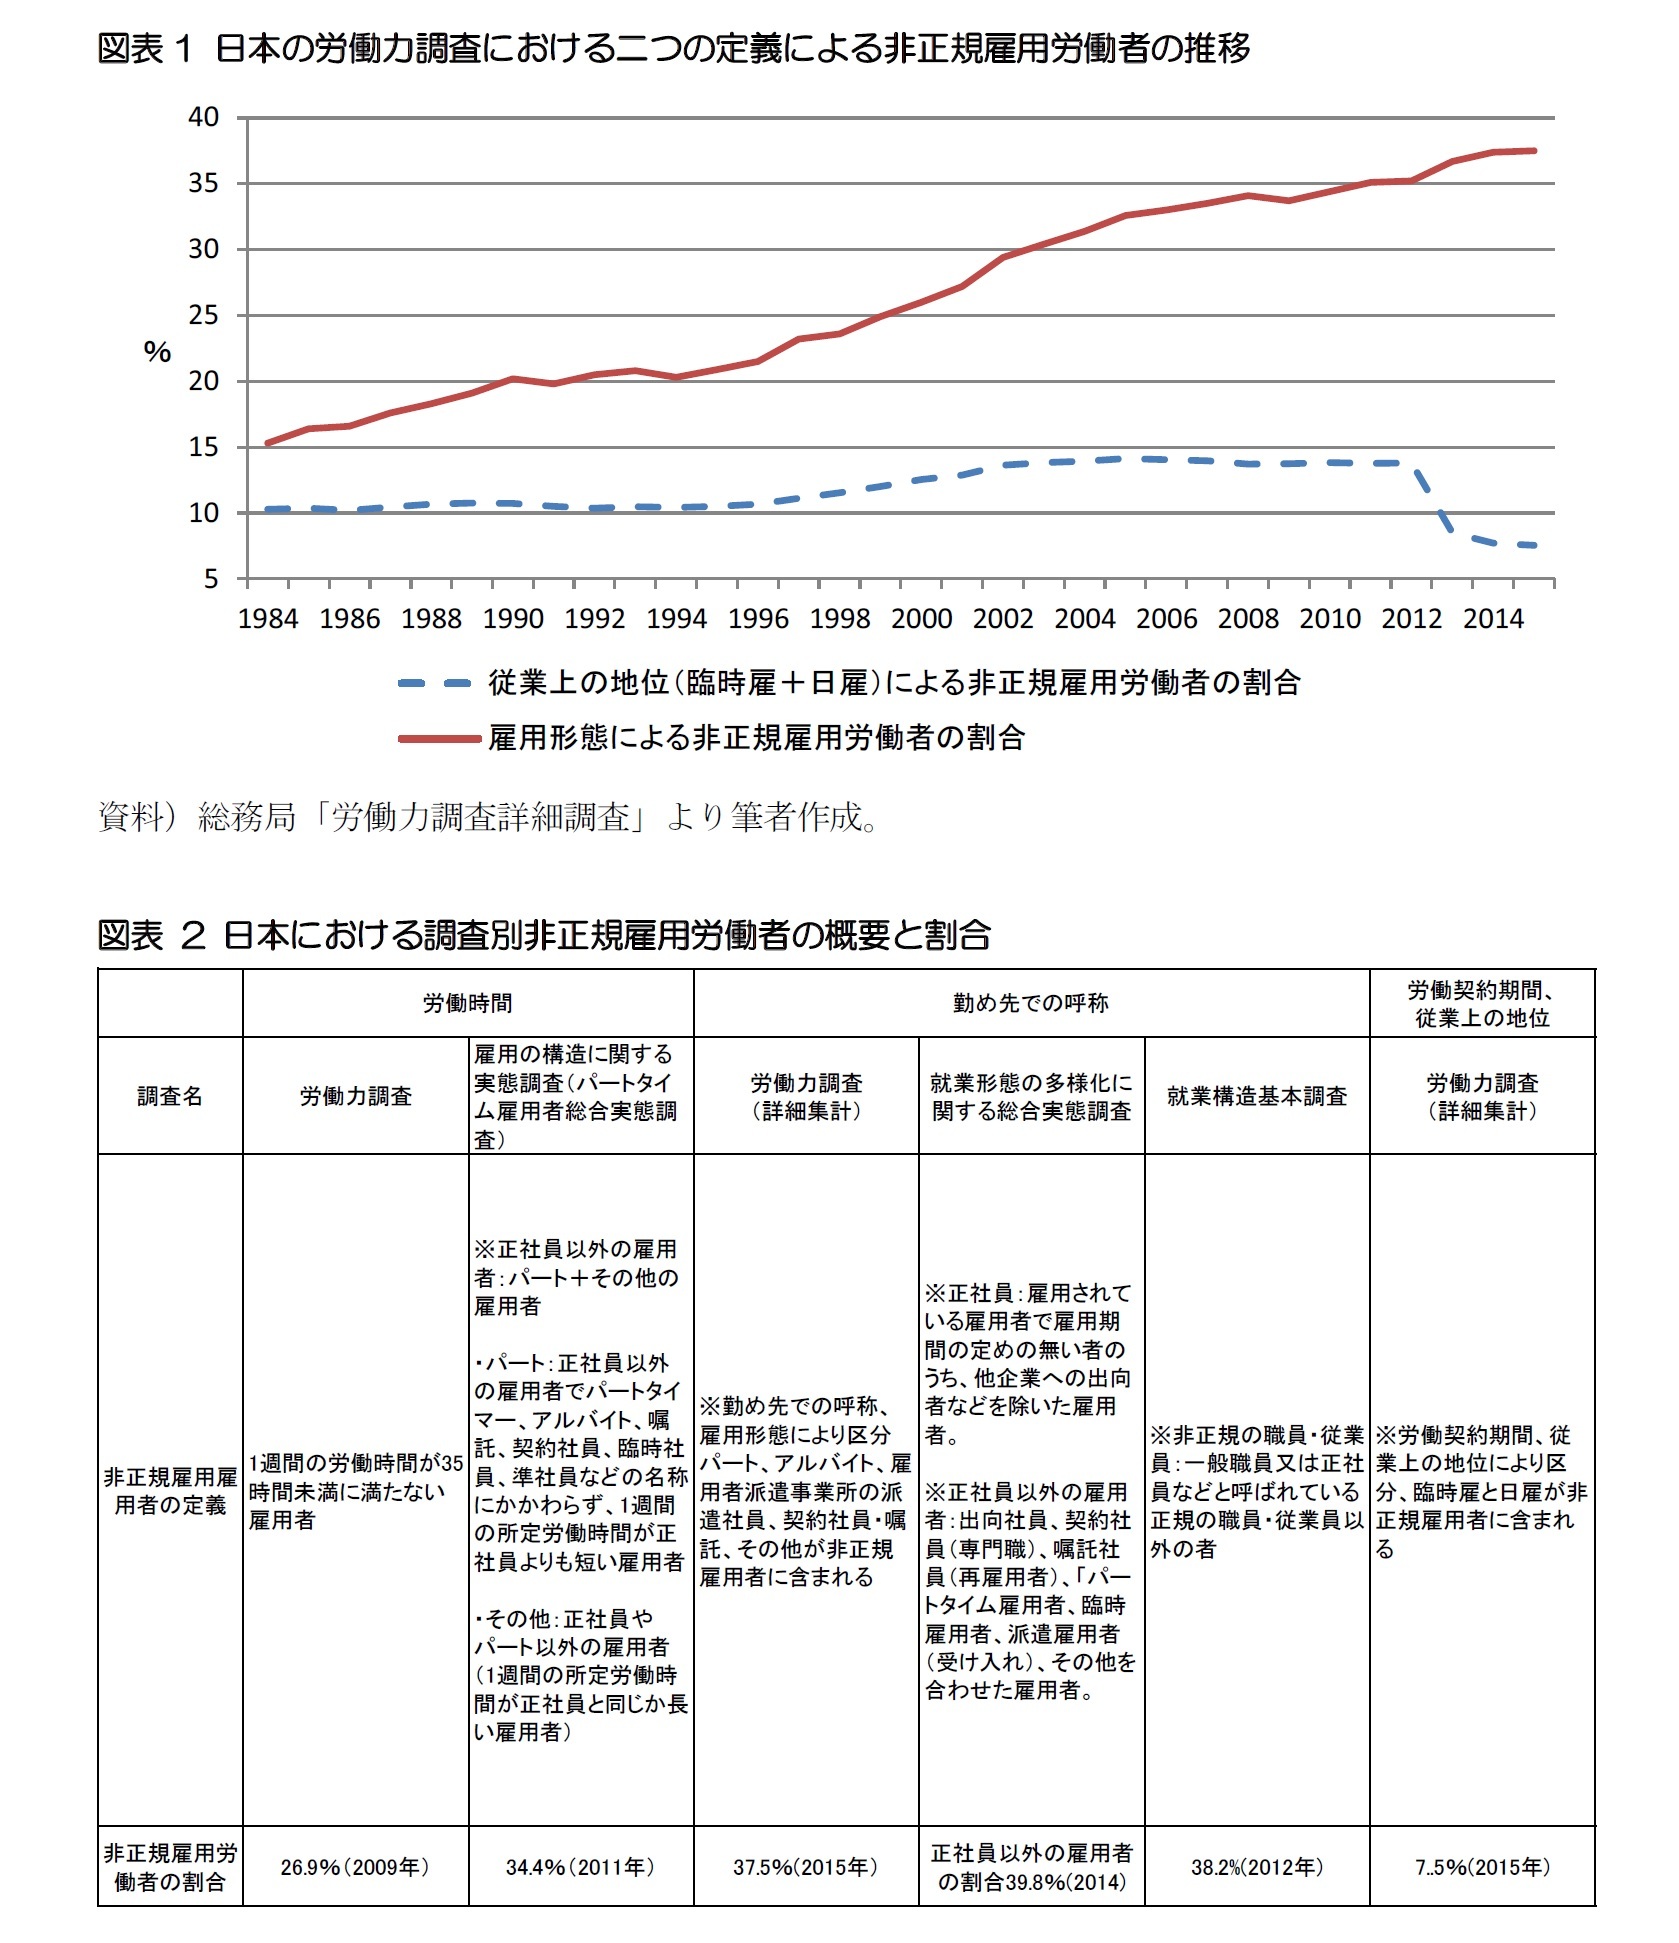 図表1 日本の労働力調査における二つの定義による非正規雇用労働者の推移/図表 2 日本における調査別非正規雇用労働者の概要と割合